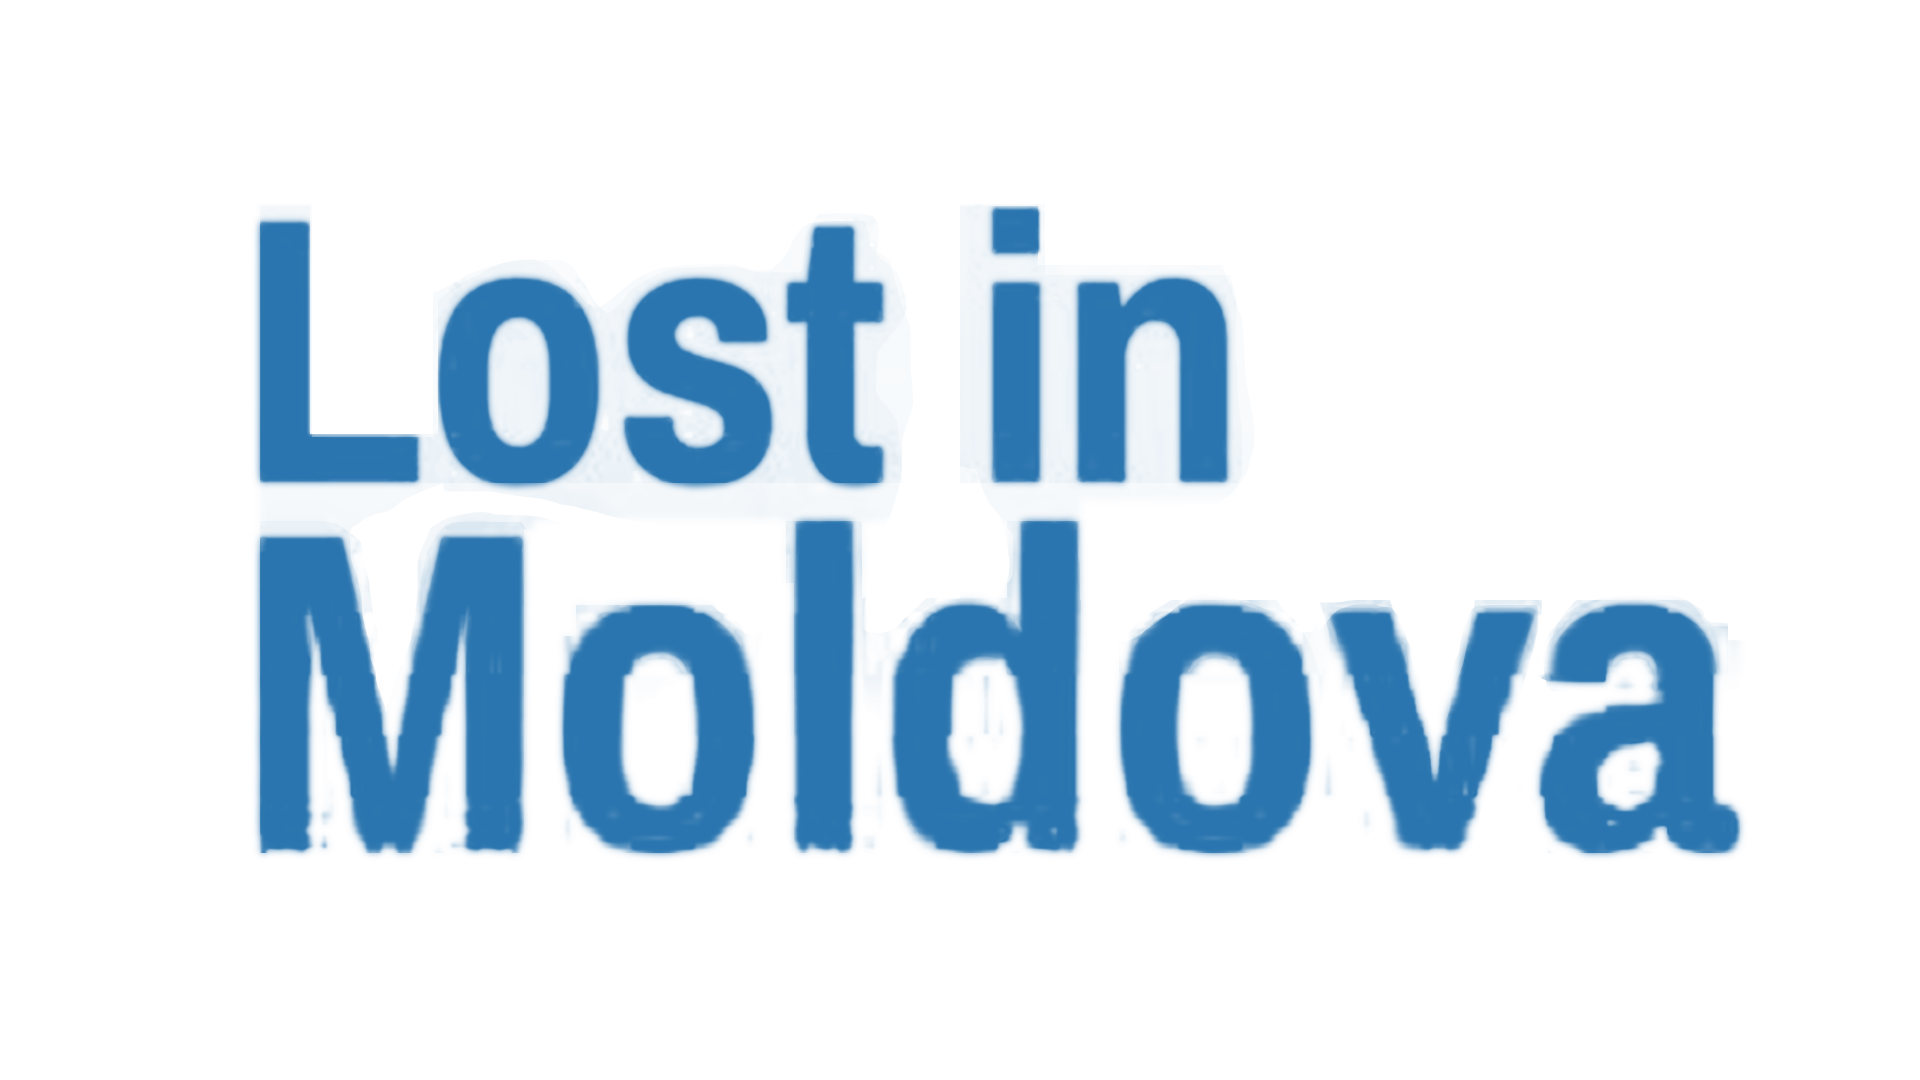 Lost in Moldova